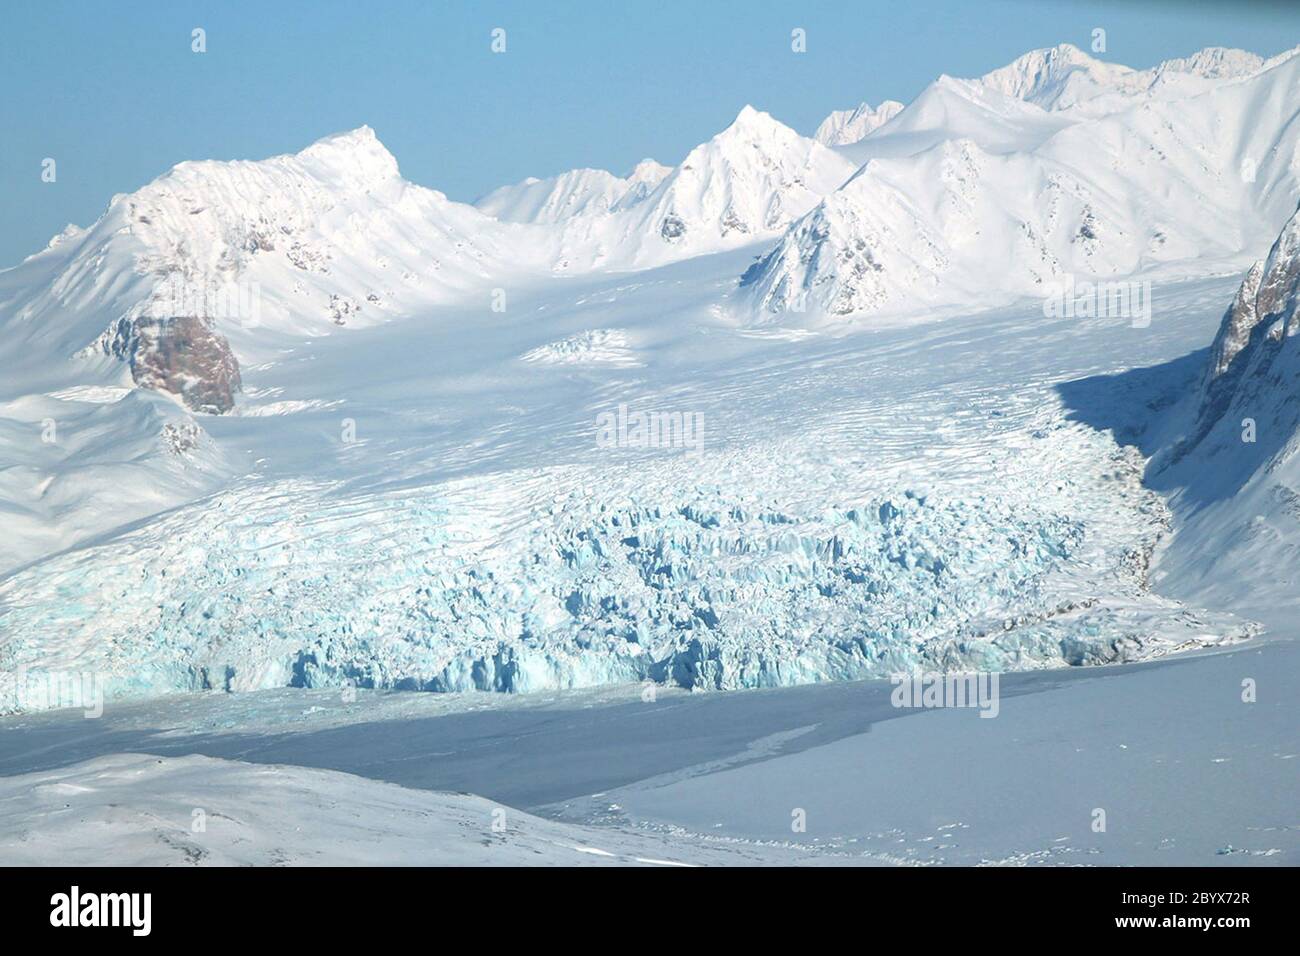 Juni 2020. Ansicht eines kleinen Gletschers in der arktischen Region des norwegischen Archipels Spitzbergen, fotografiert vom Airborne Tropical Tropopause Experiment (ATTREX) der NASA. Es ist eine der sieben Regionen, in denen der Eisverlust sich beschleunigt und die Ausbeutung der Süßwasserressourcen verursacht. Eine neue Studie zeigt, dass sieben Regionen, die die globalen Eismassenverluste dominieren, mit einer beschleunigten Geschwindigkeit schmelzen und die beschleunigte Schmelzegeschwindigkeit die Süßwasserressourcen erschöpft, von denen Millionen von Menschen abhängig sind. Quelle: UPI/Alamy Live News Stockfoto